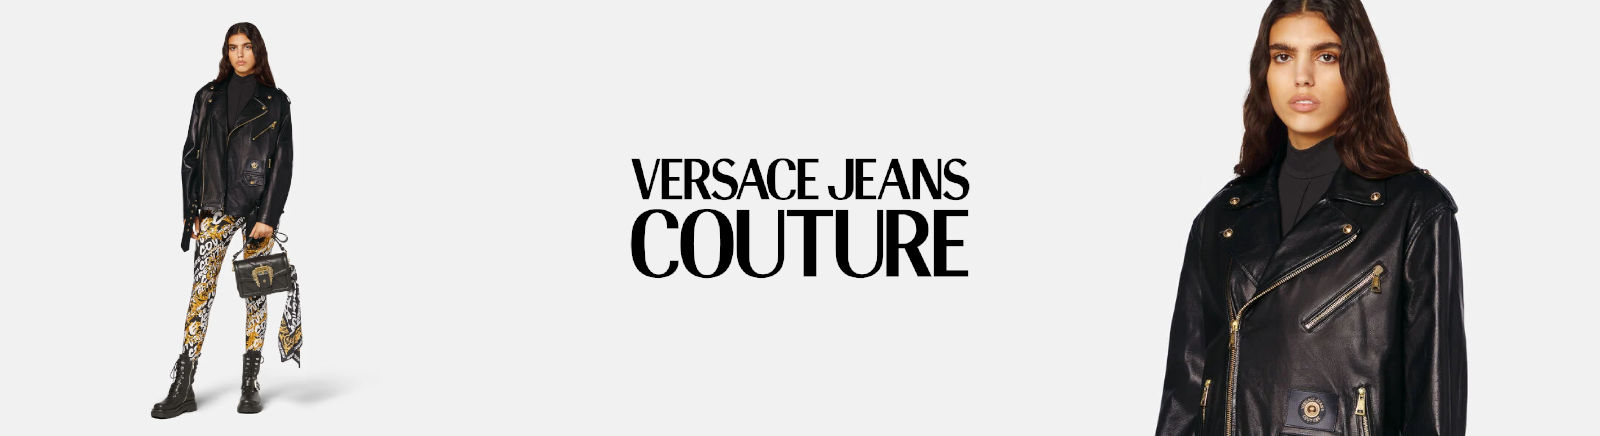 Versace Jeans Damenschuhe online entdecken im Juppen Shop